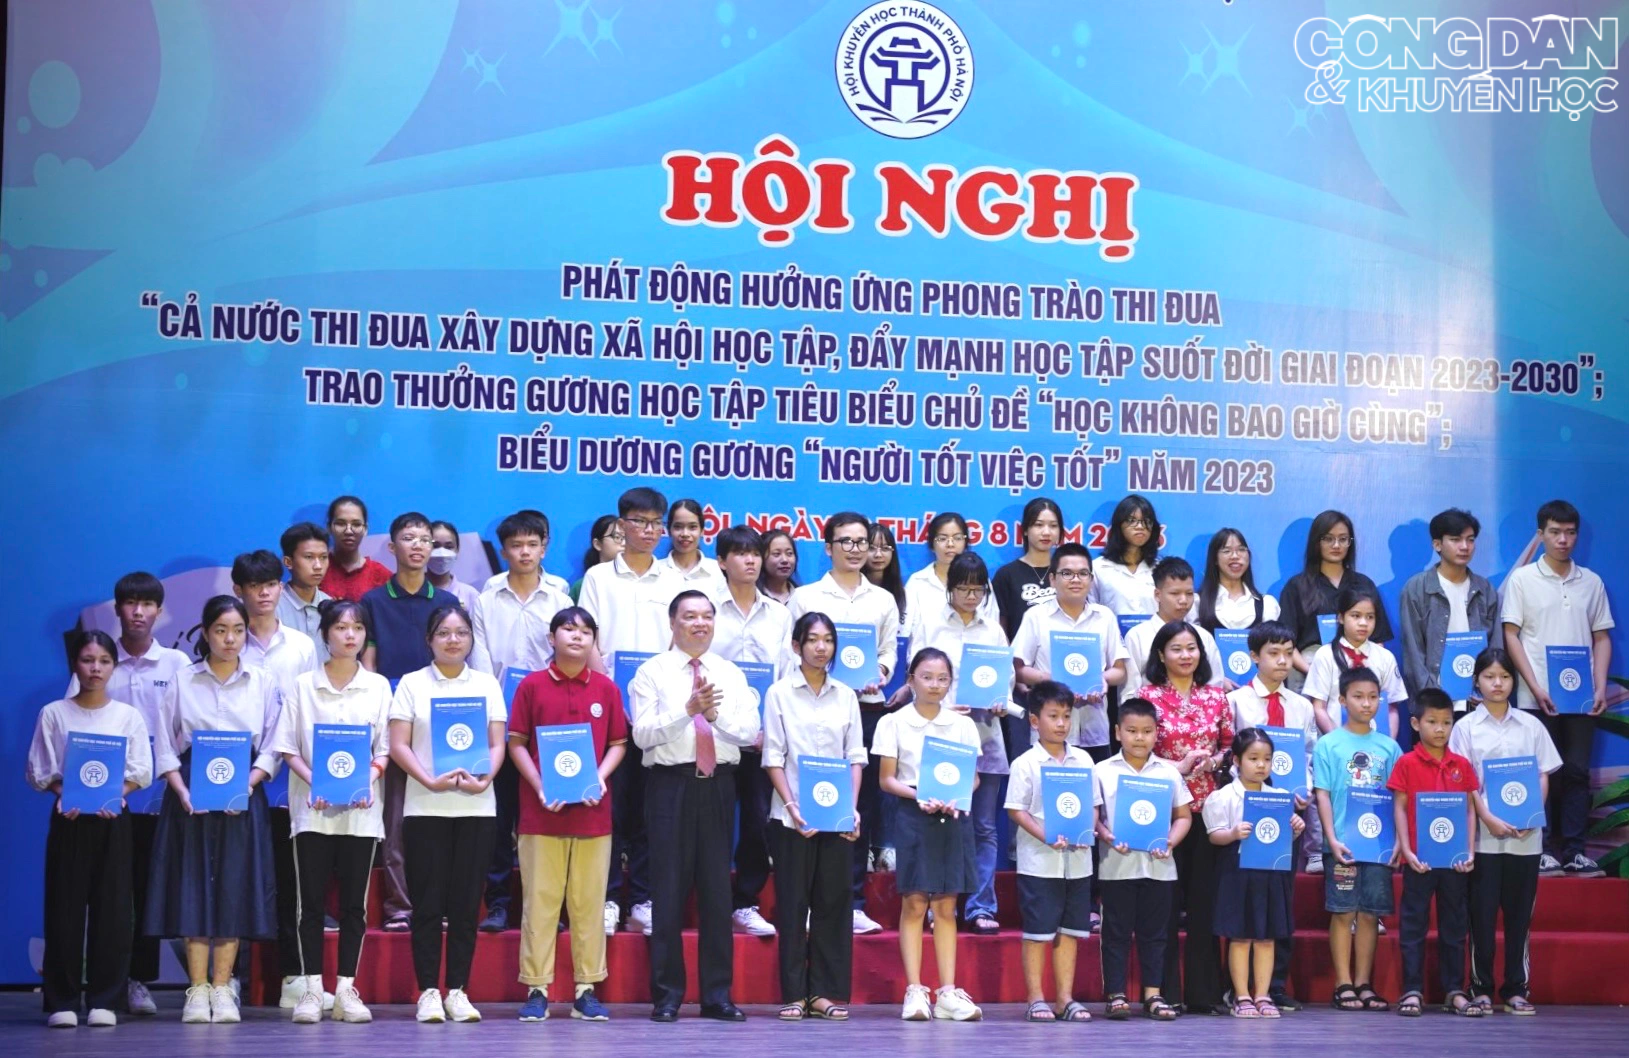 Hội Khuyến học thành phố Hà Nội phát động hưởng ứng phong trào thi đua xây dựng xã hội học tập, tự học suốt đời - Ảnh 9.